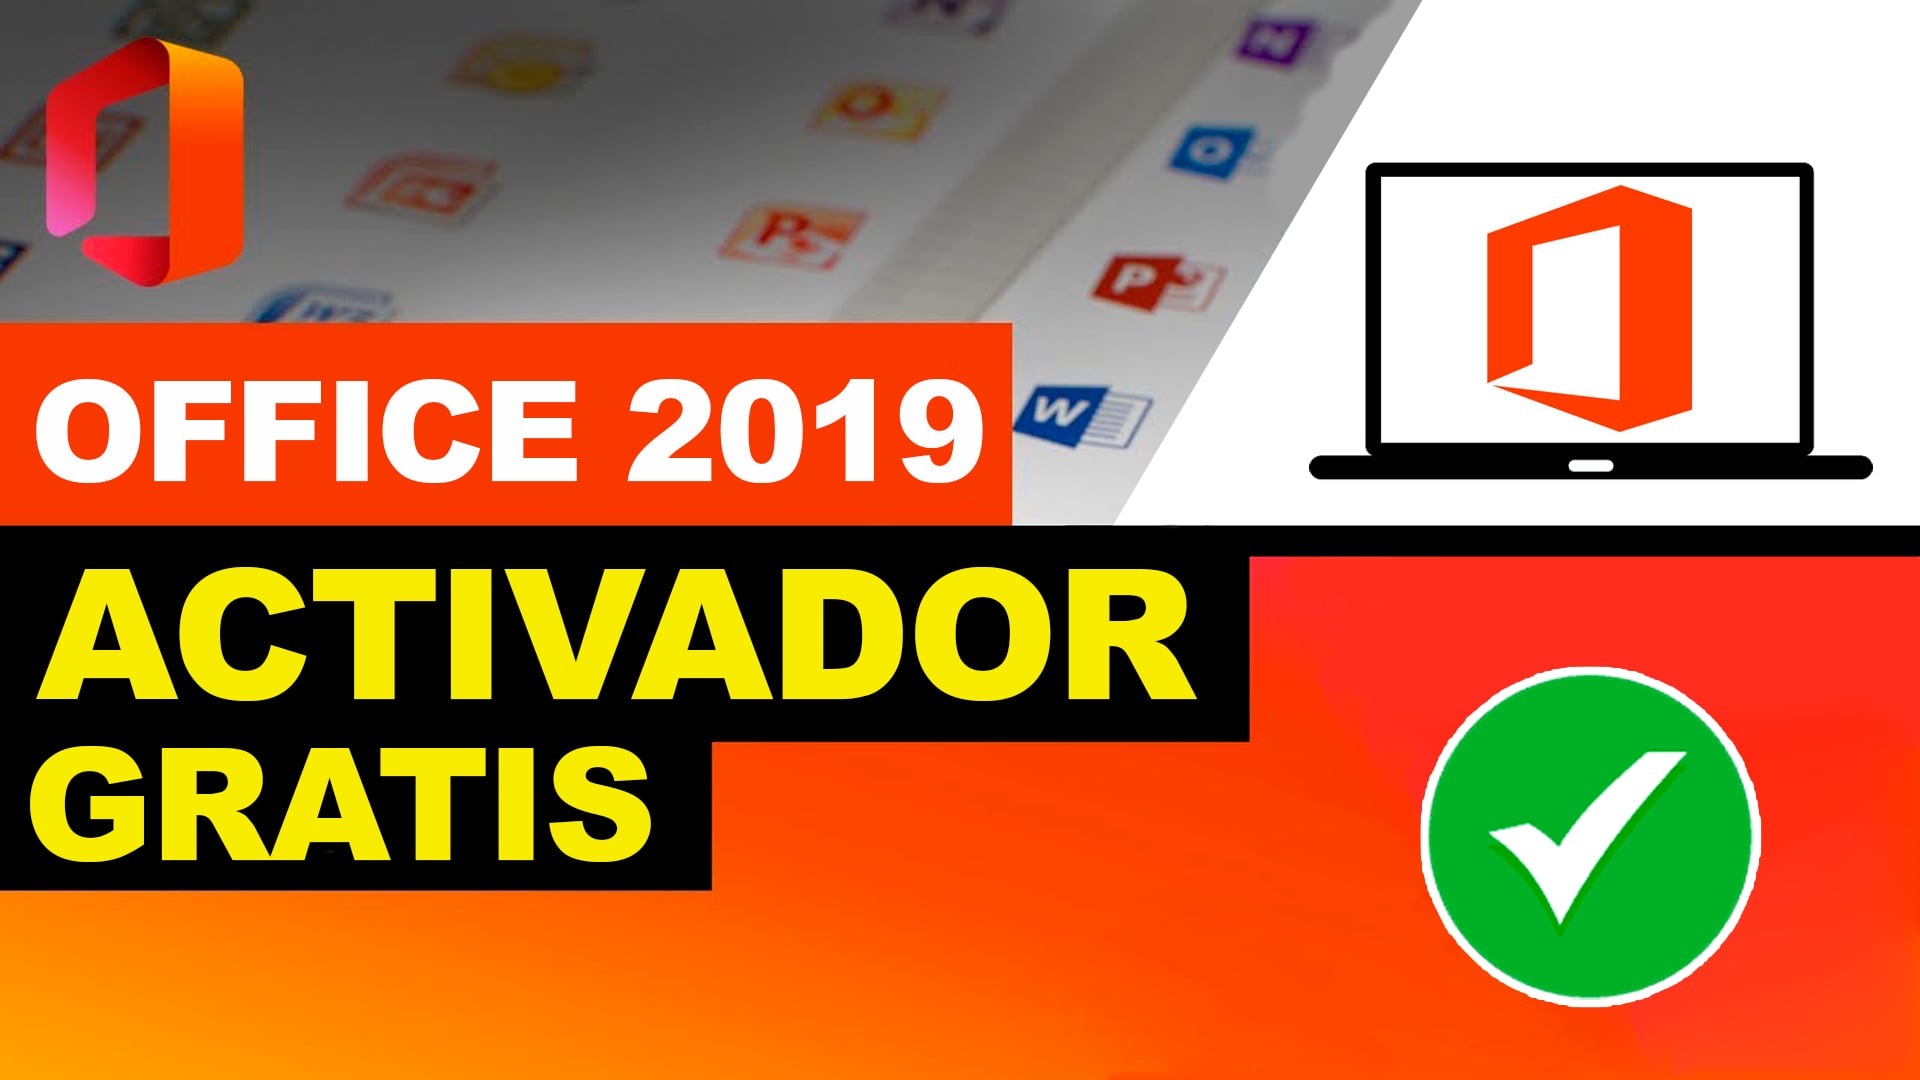 Activador Office 2019 Ratiborus Gratis Como Activar Office 2019 Activacion Office Kms Tools 4840